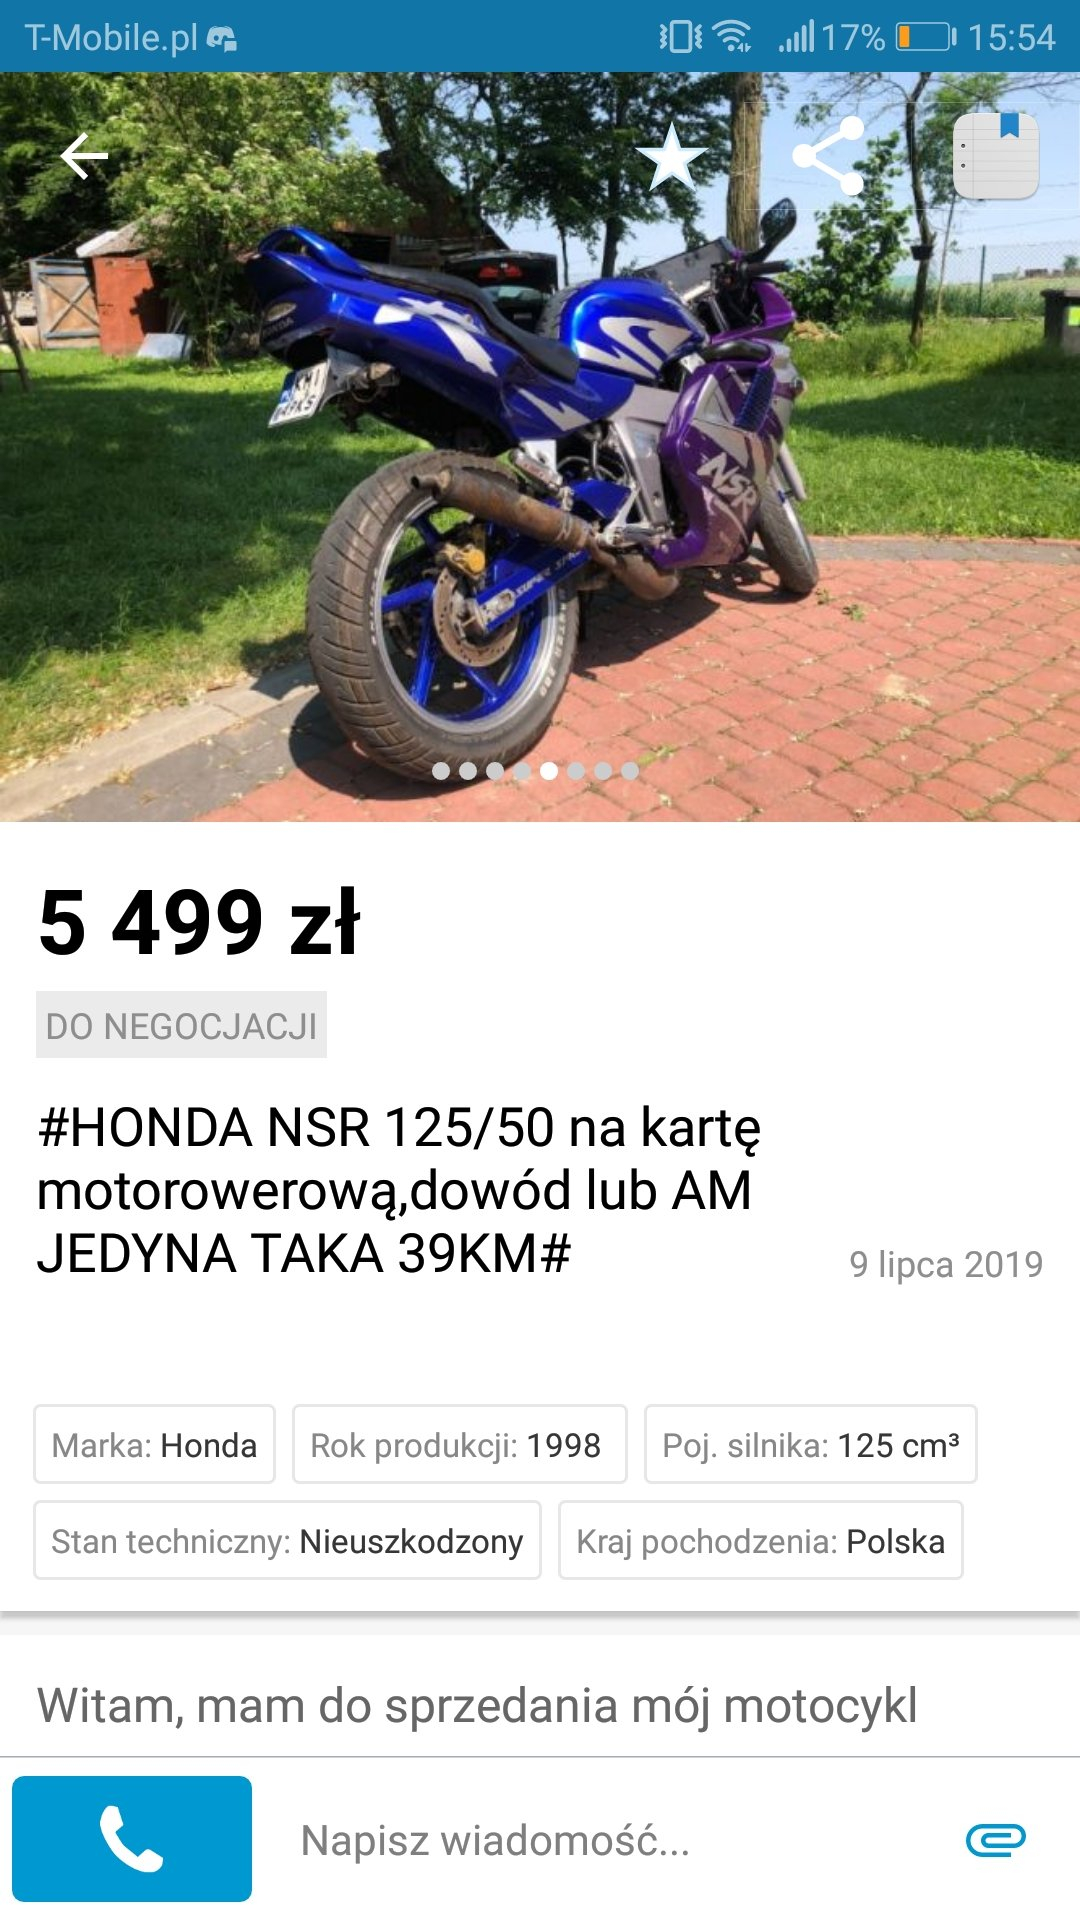 Honda Nsr 125 Mająca 39 Km Zarejestrowana Na 50... - Thebloody - Wykop.pl